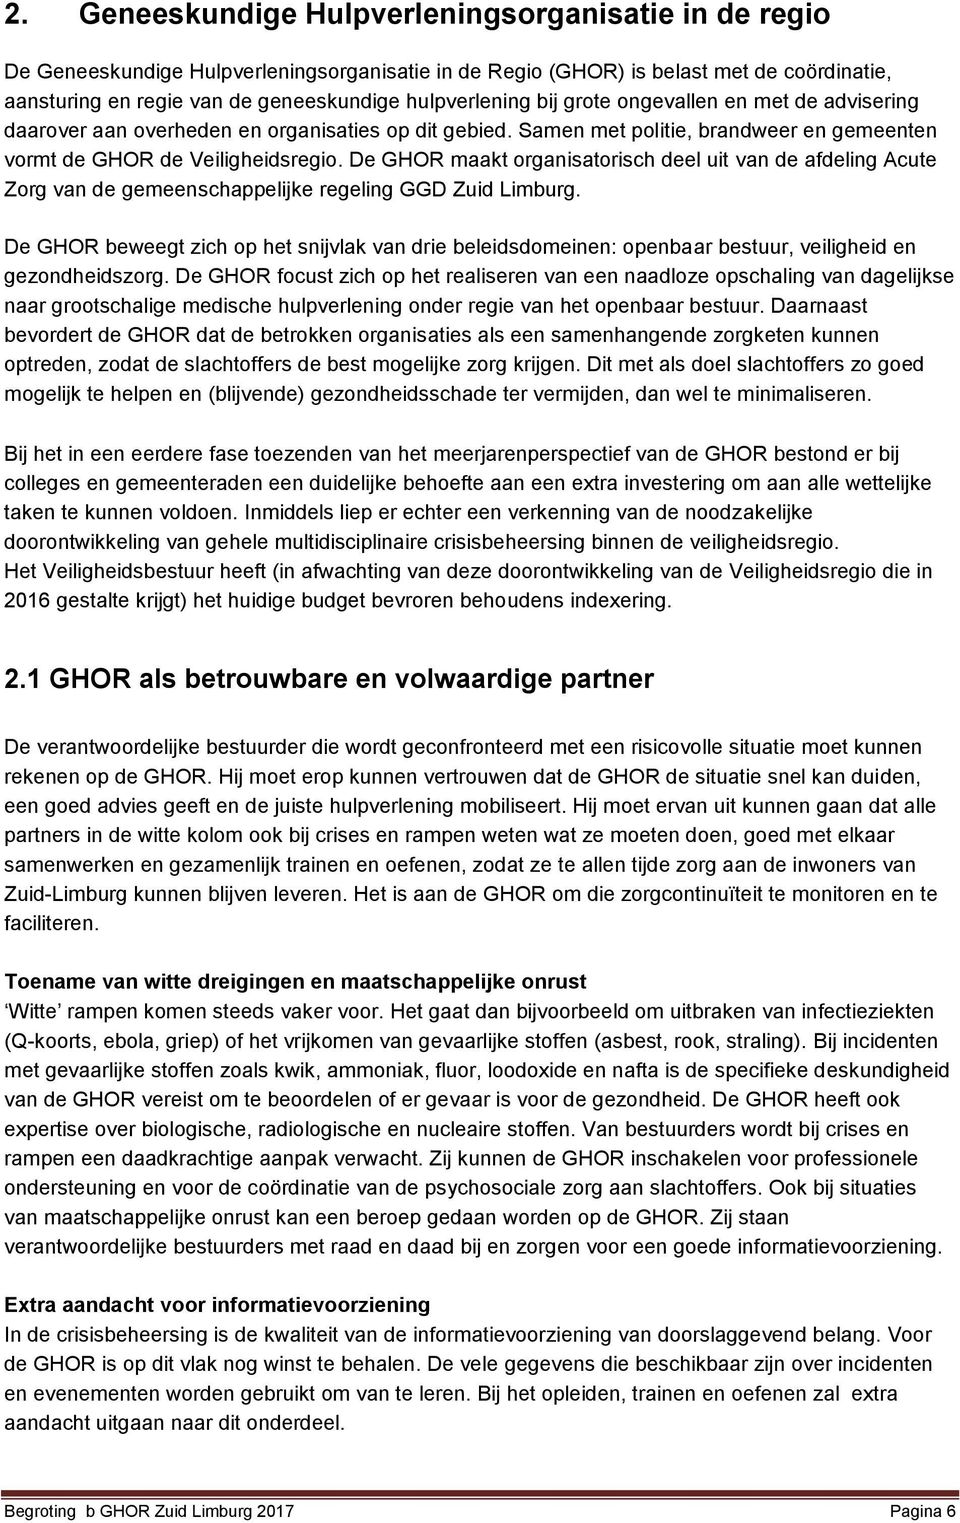 De GHOR maakt organisatorisch deel uit van de afdeling Acute Zorg van de gemeenschappelijke regeling GGD Zuid Limburg.